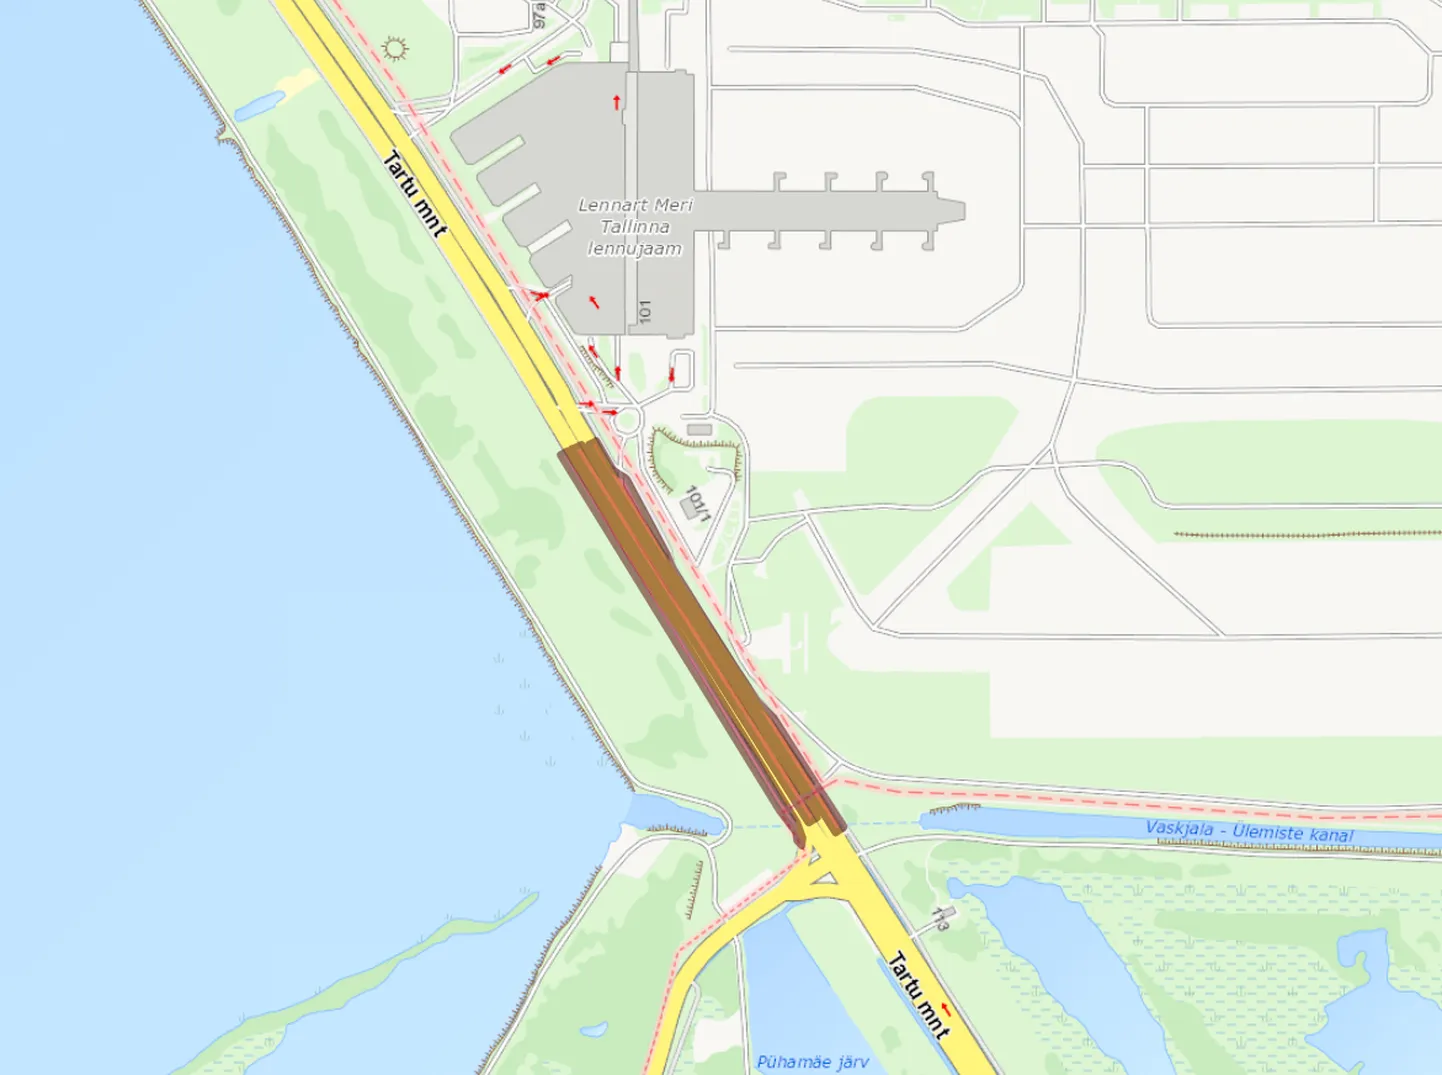 Отрезок дороги, на котором запланированы ремонтные работы, выделен на карте коричневым цветом.